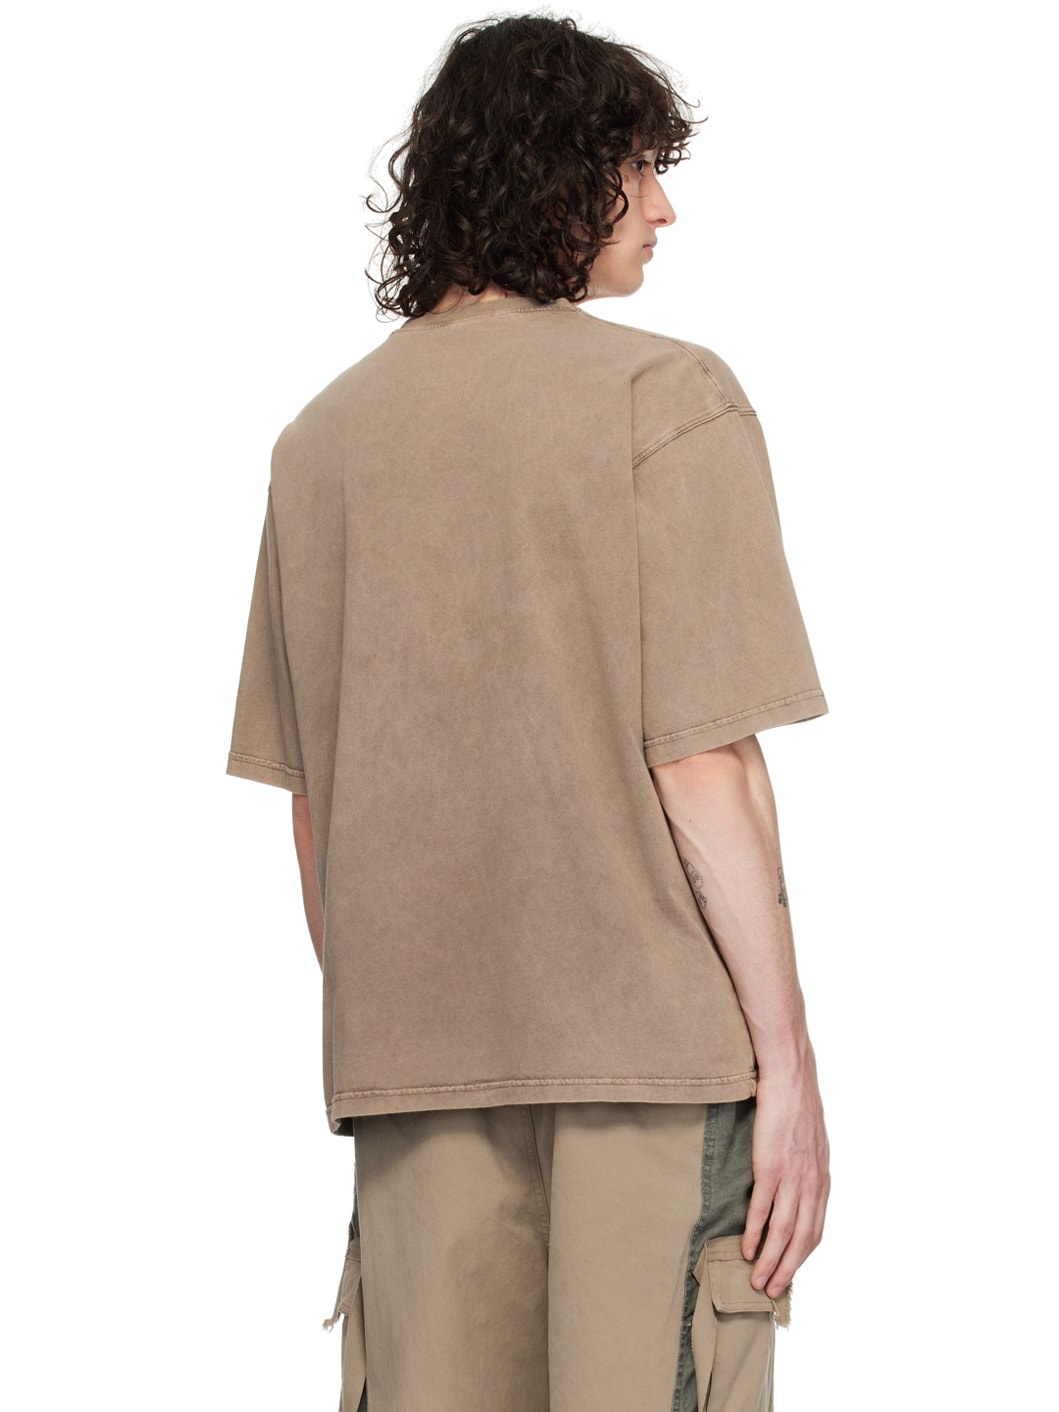 Brown Charm T-Shirt - 3